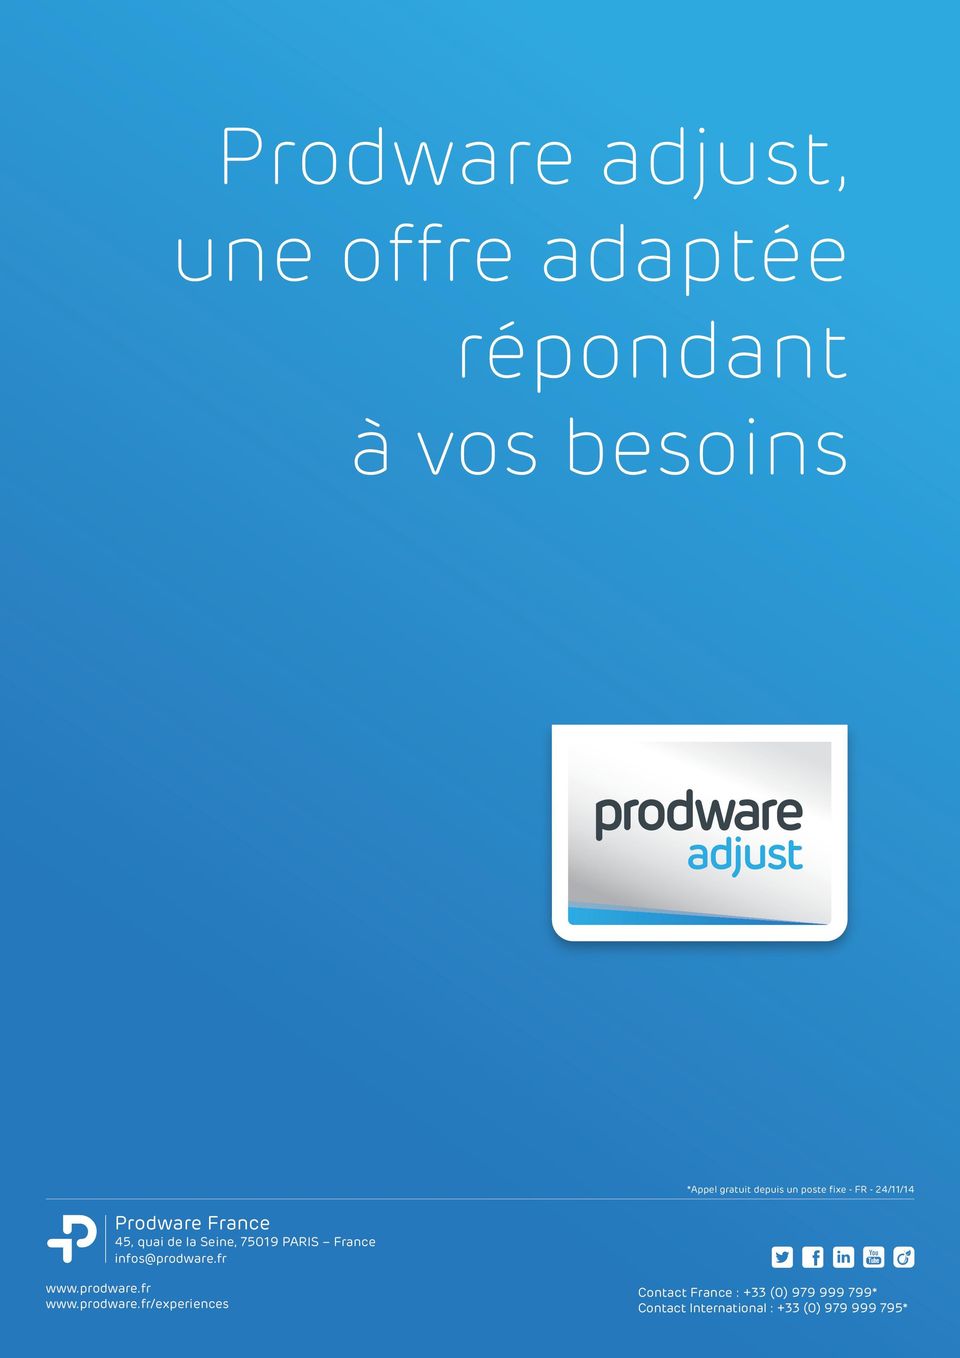 fr *Appel gratuit depuis un poste fixe - FR - 24/11/14 www.prodware.fr www.